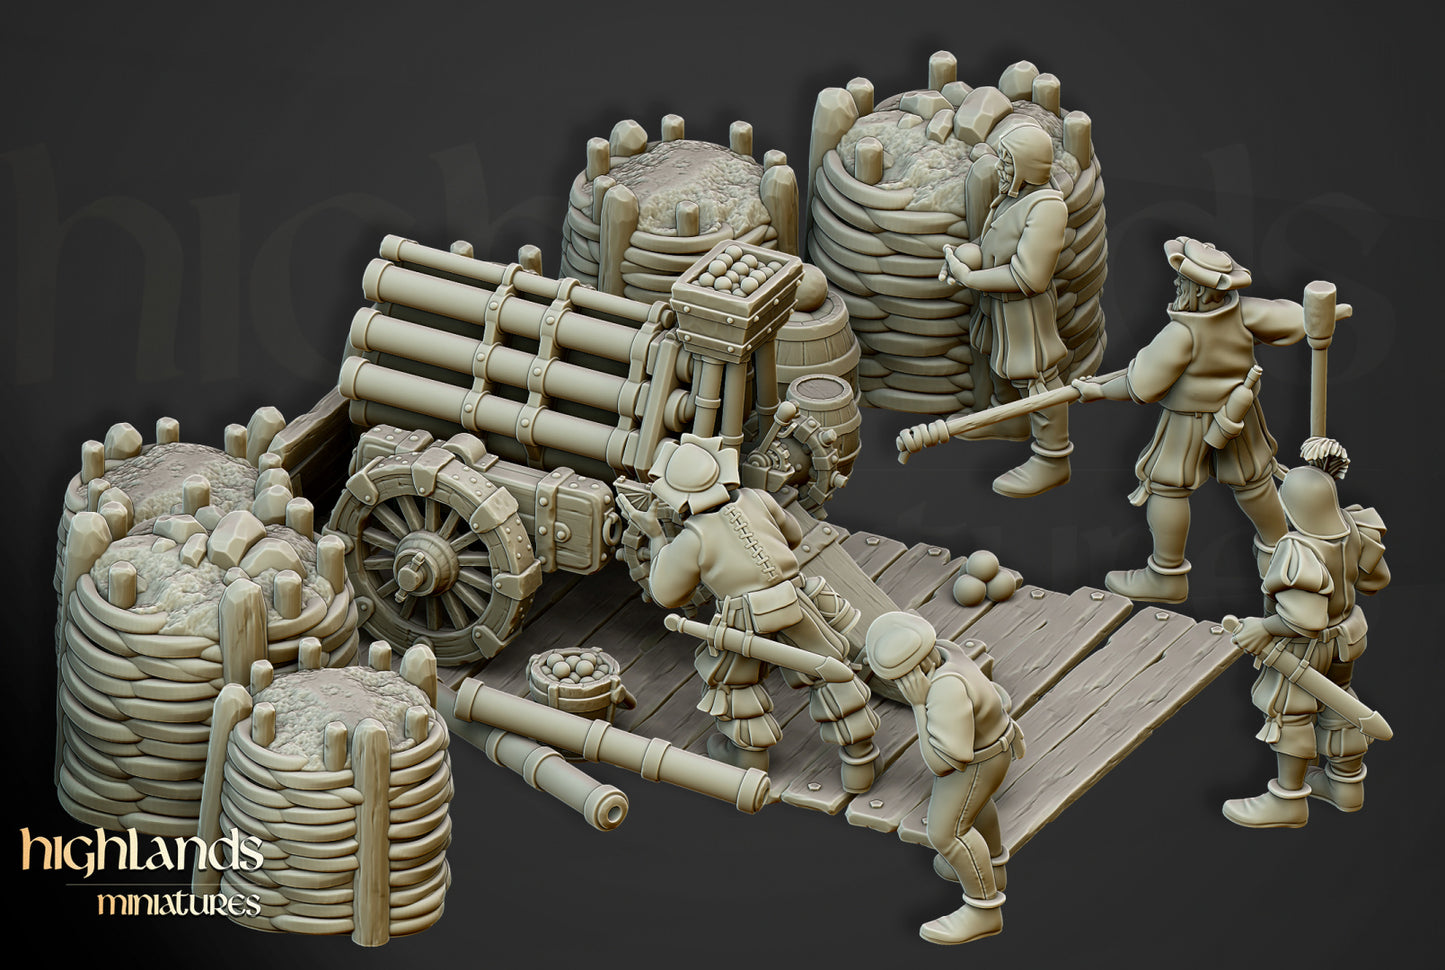 Sunland Artillery Volley Gun Battery by Highlands Miniatures.